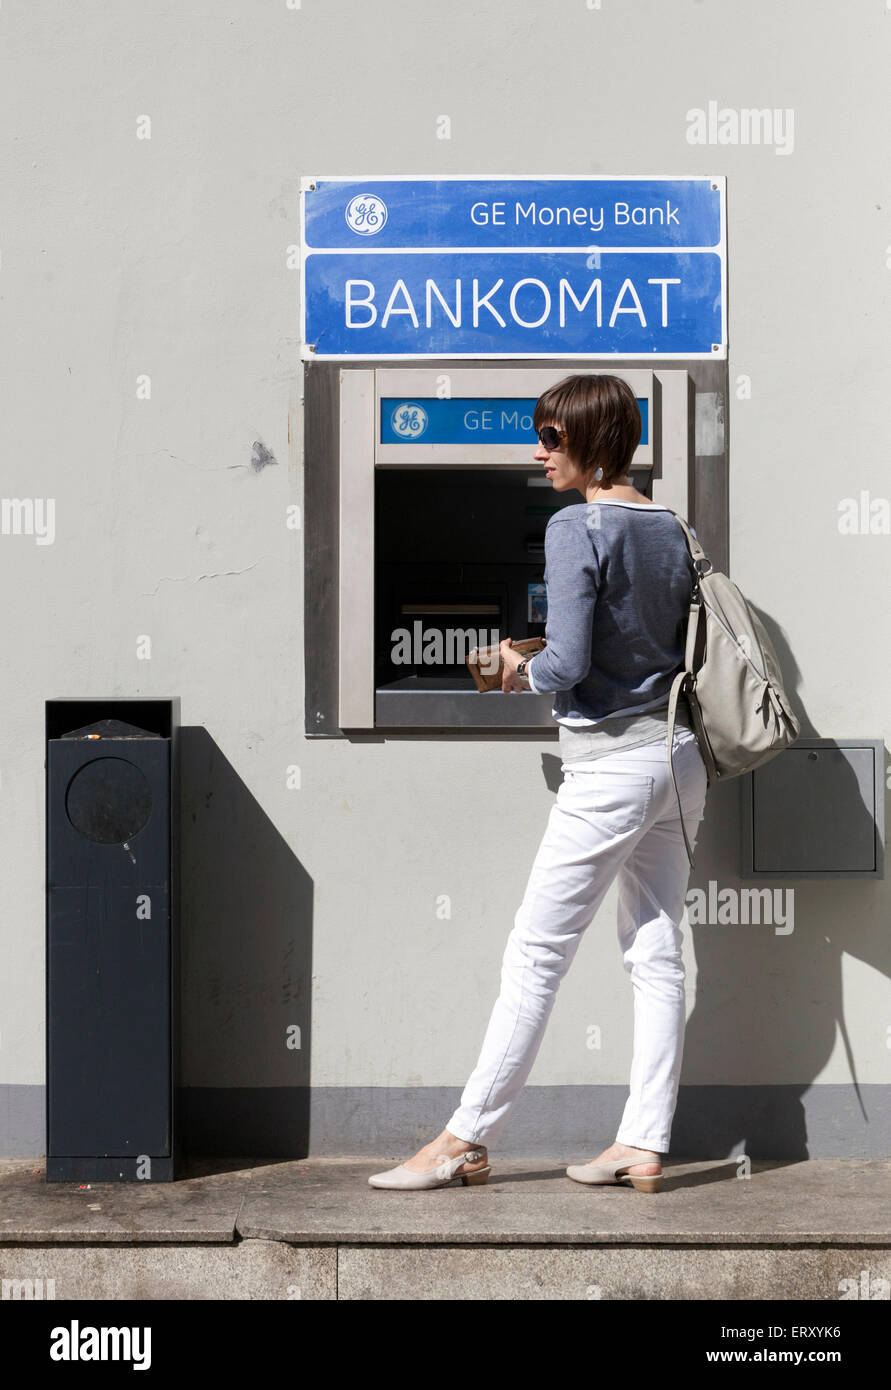 GE Money Bank Frau Geldautomat Geld abheben, Tschechische Republik Frau abhebt Bargeld Stockfoto